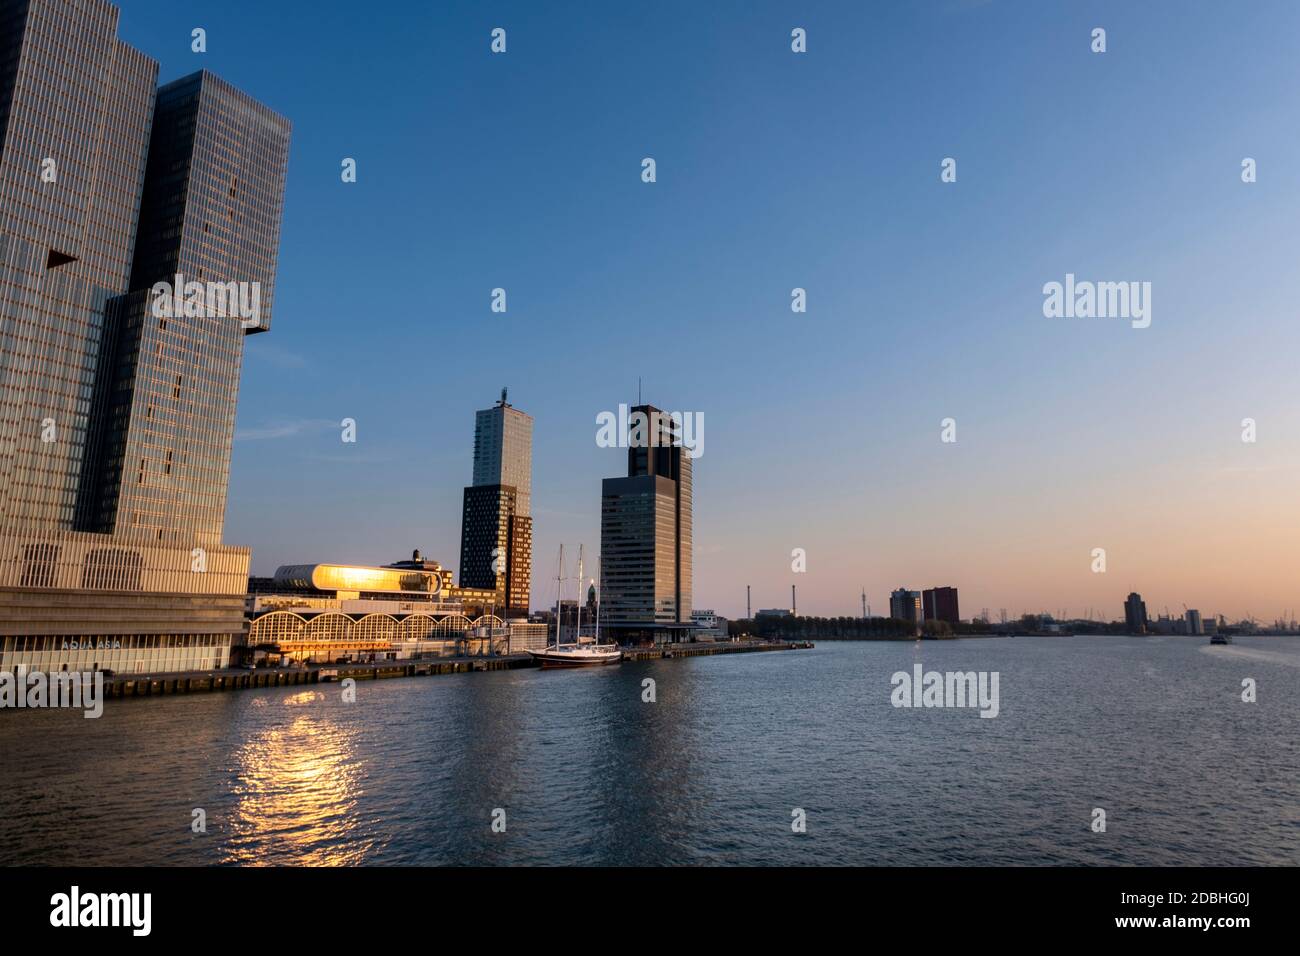 Stadtbild von Rotterdam, Blick auf 'de kop van zuid' vom Flussufer Stockfoto